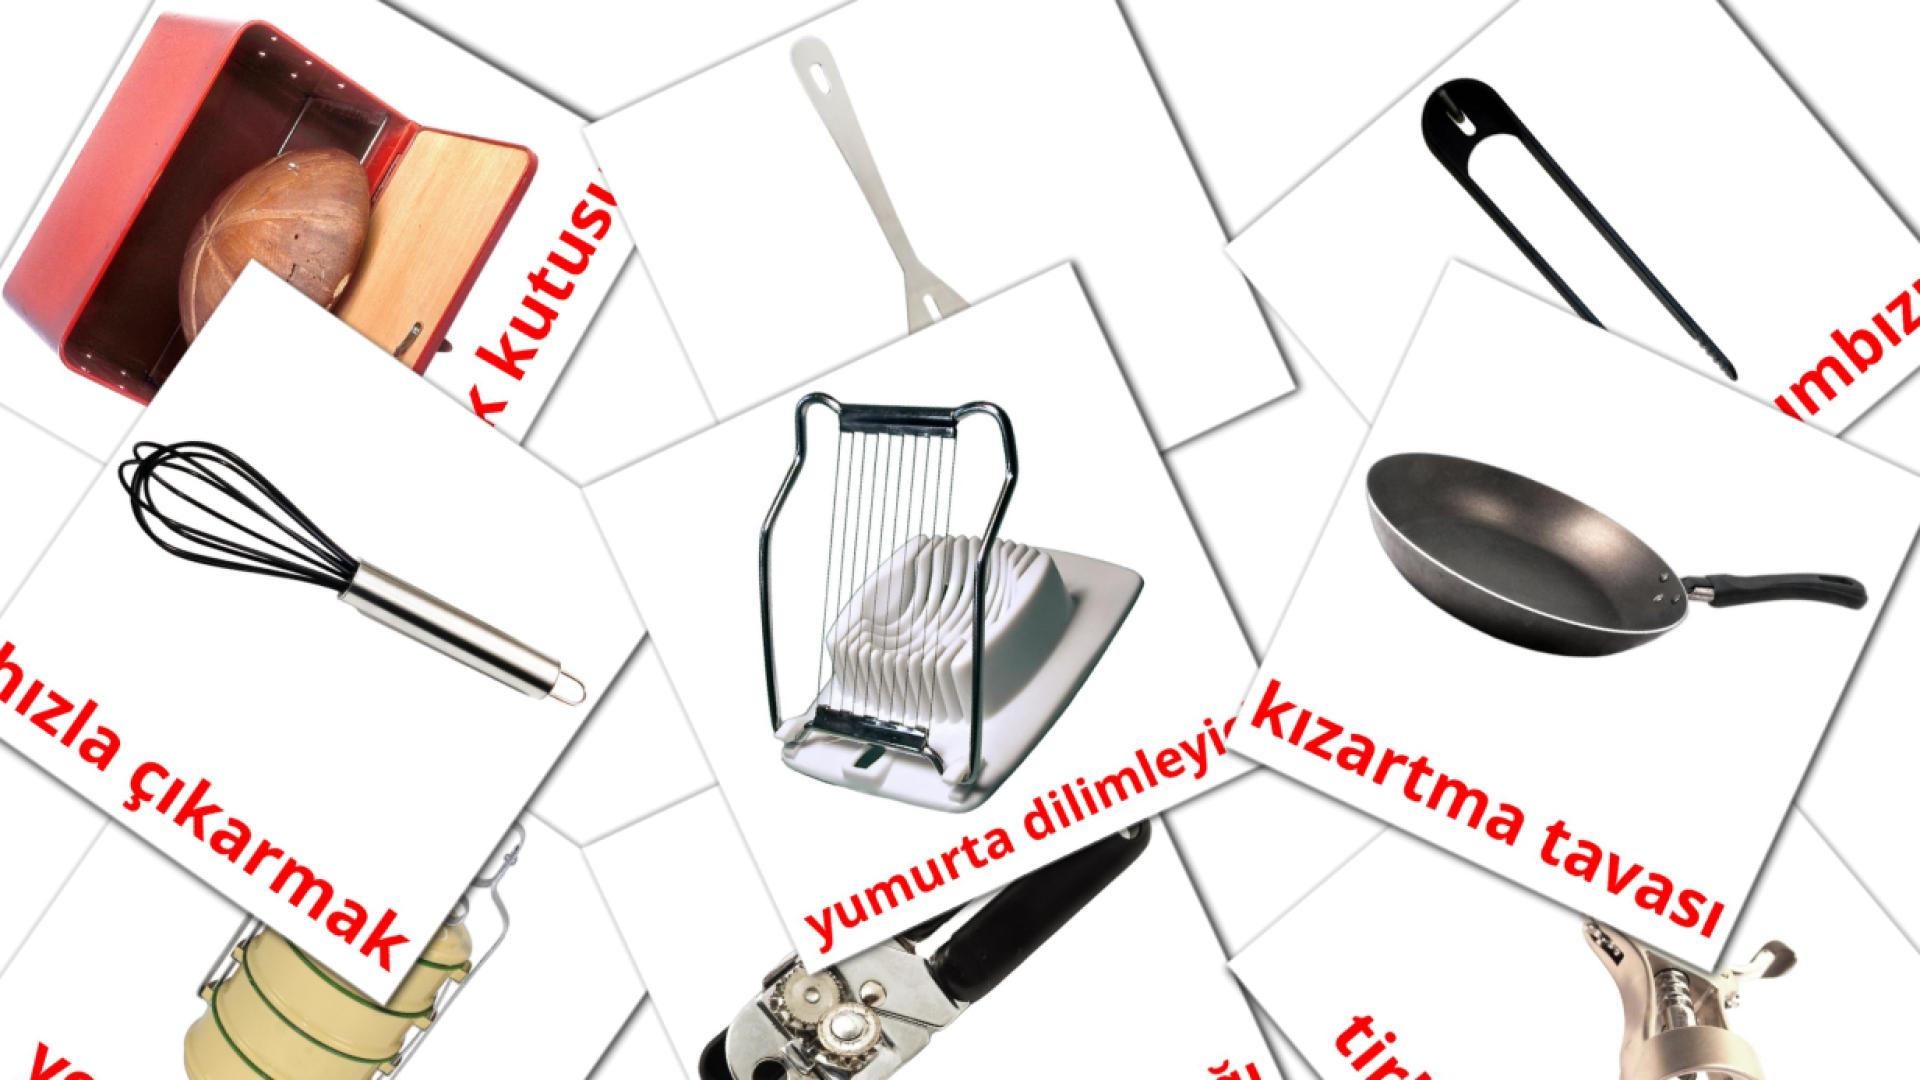 31 Kitchenware mutfak eşyaları  flashcards